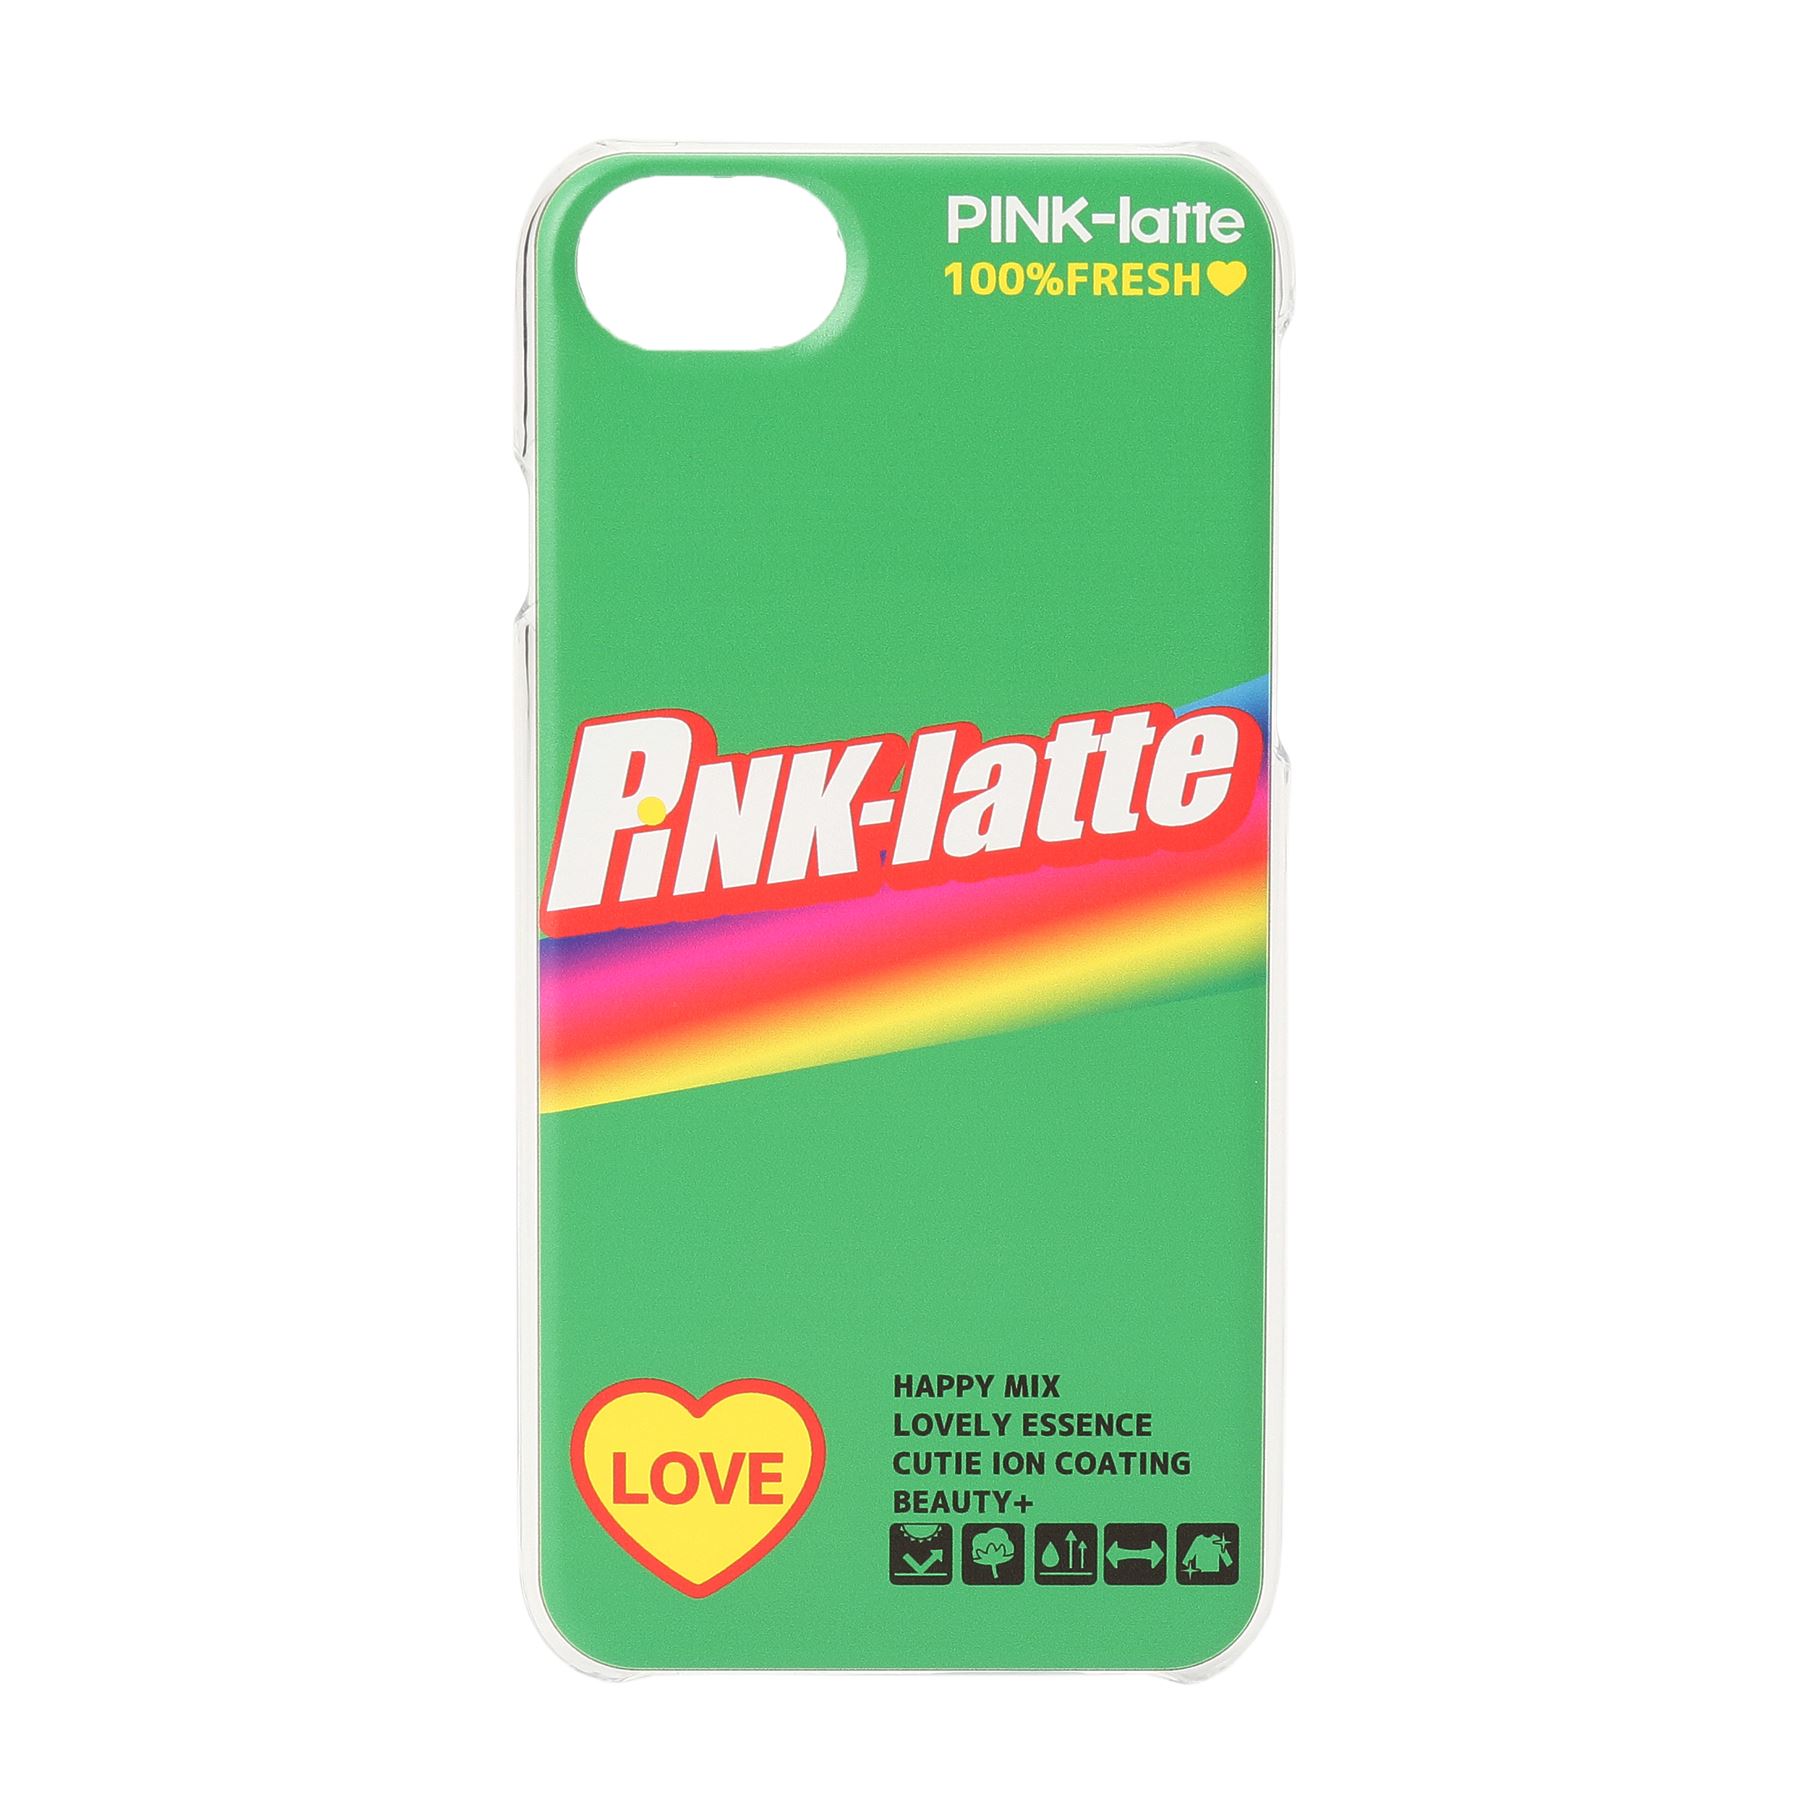 ピンク ラテ(PINK-latte)のiPhone8/7/6s/6 ロゴクリアスマホケース グリーン(022)